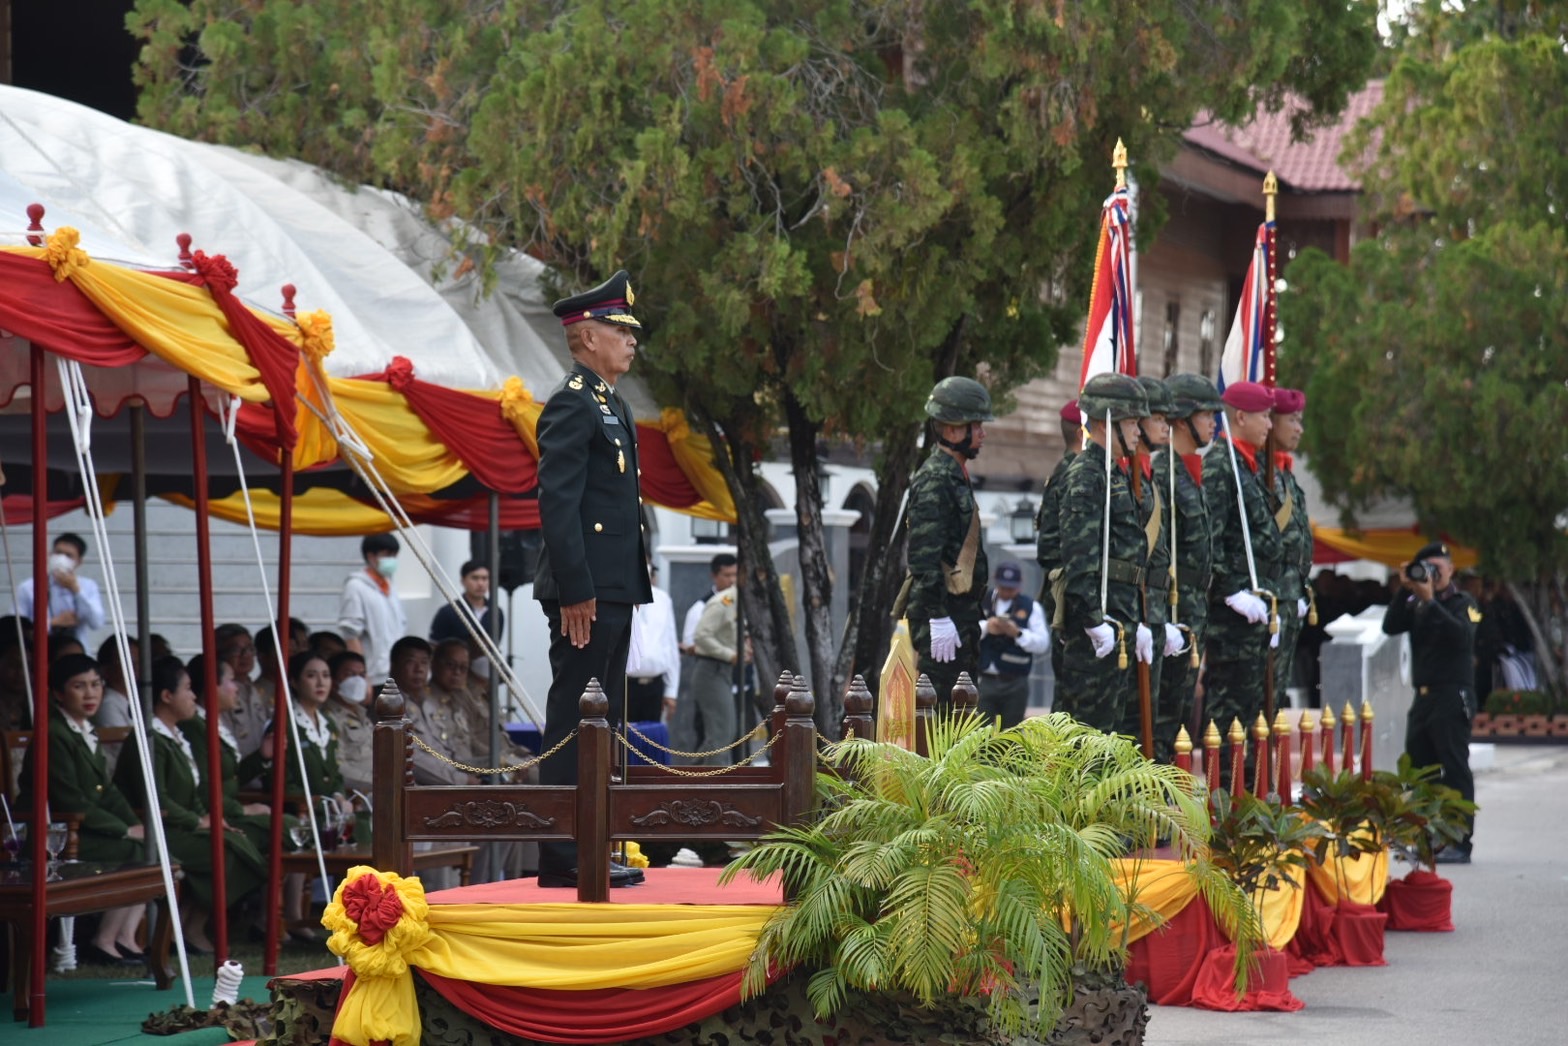 สำนักงานปศุสัตว์จังหวัดลำปาง เข้าร่วมเป็นเกียรติในพิธีกระทำสัตย์ปฏิญาณตนต่อธงชัยเฉลิมพล เนื่องในวันกองทัพไทย ประจำปี 2567